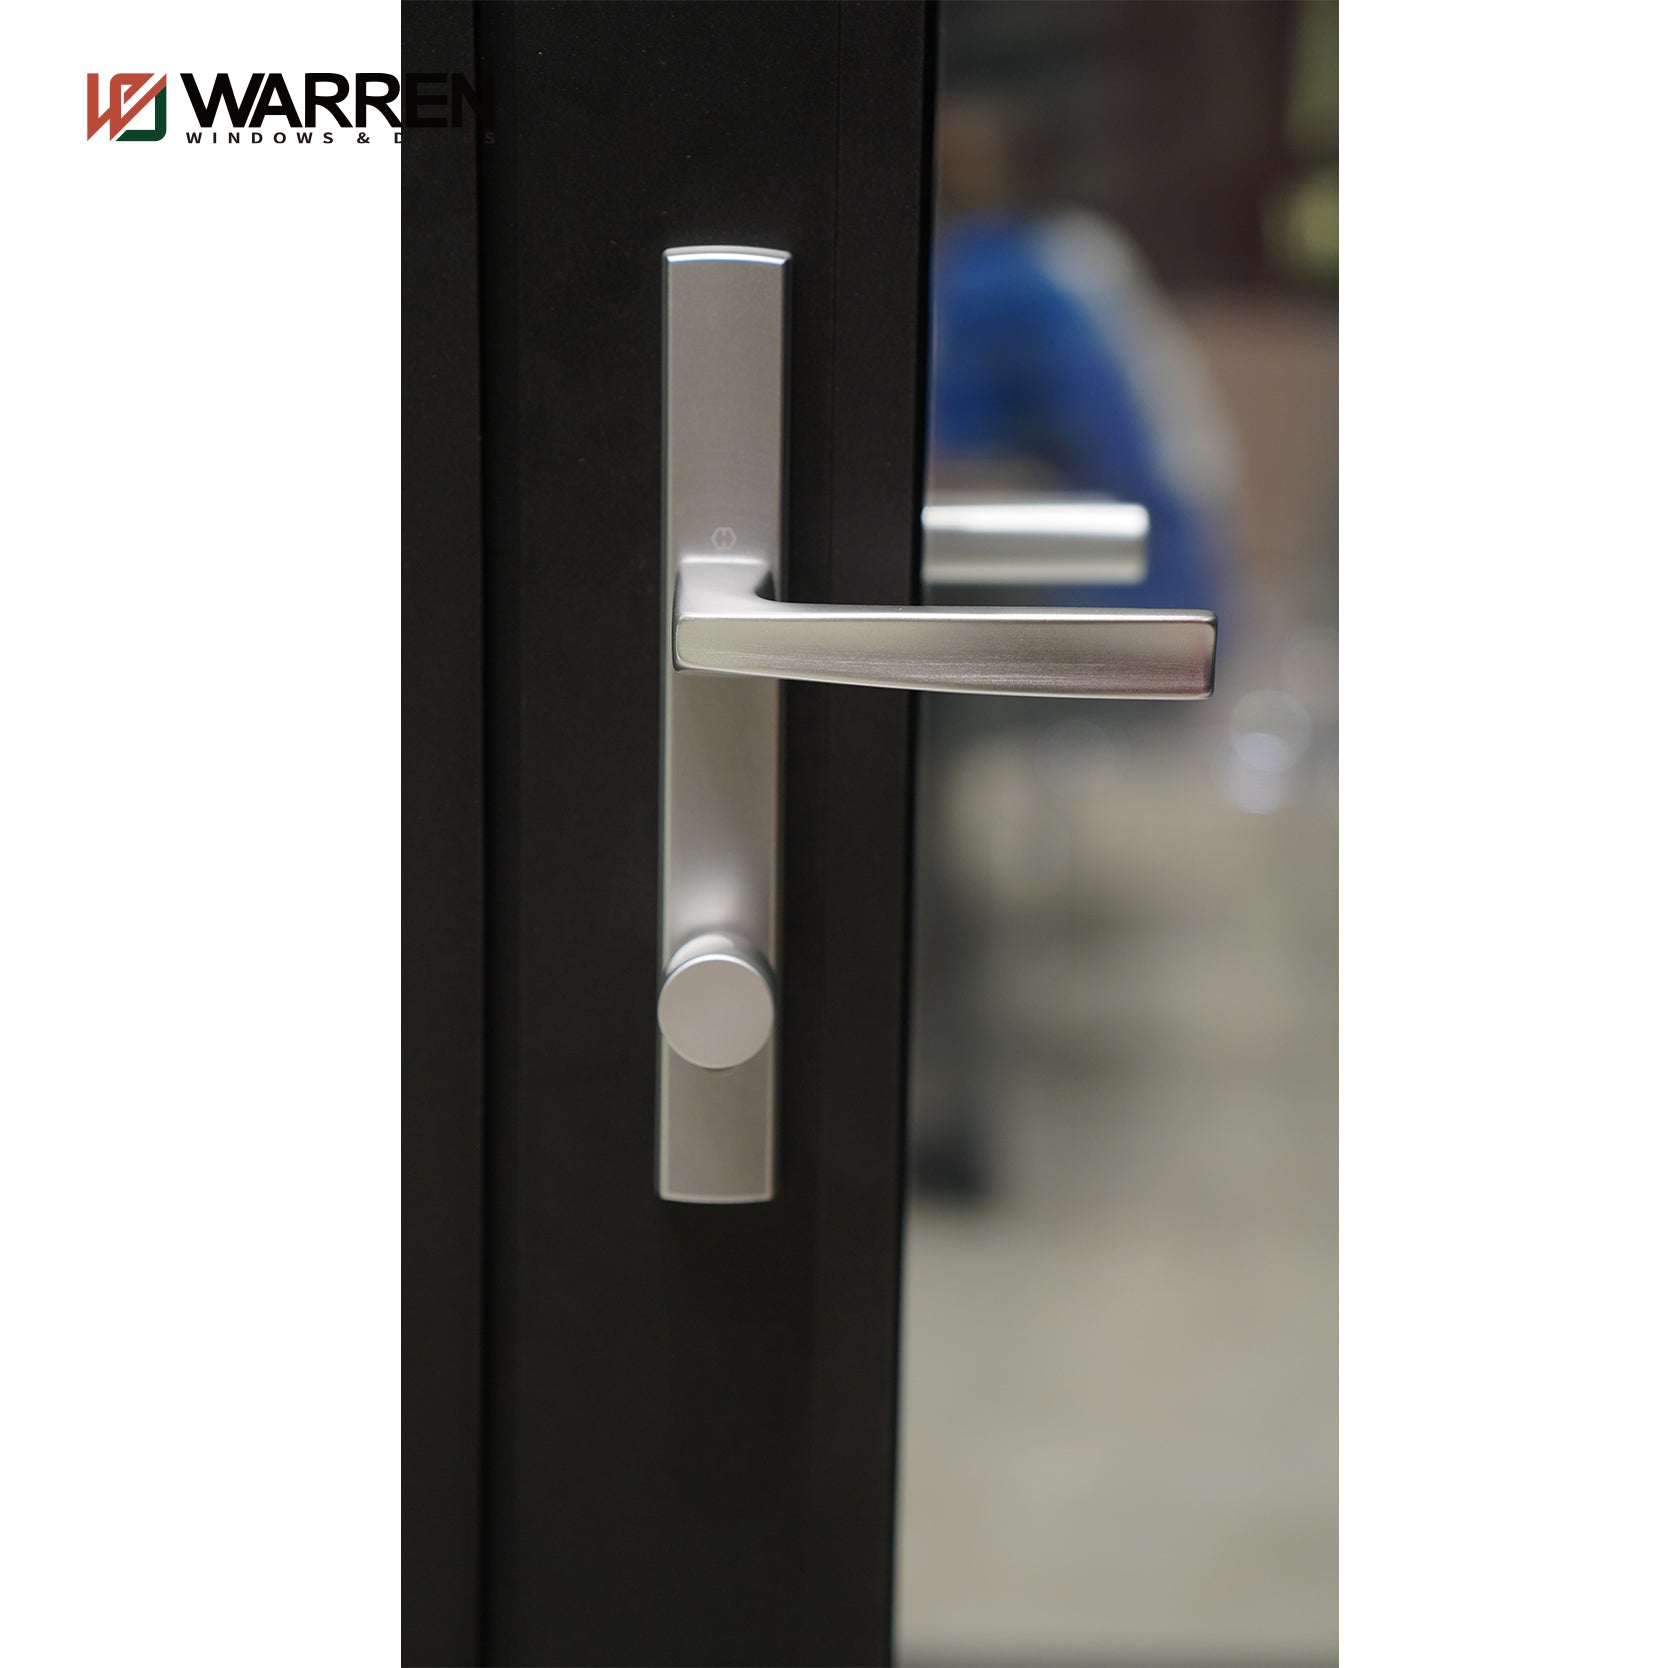 Warren High Quality Custom Wholesale Aluminum Bifold Doors Interior Glass French Doors Aluminum Door